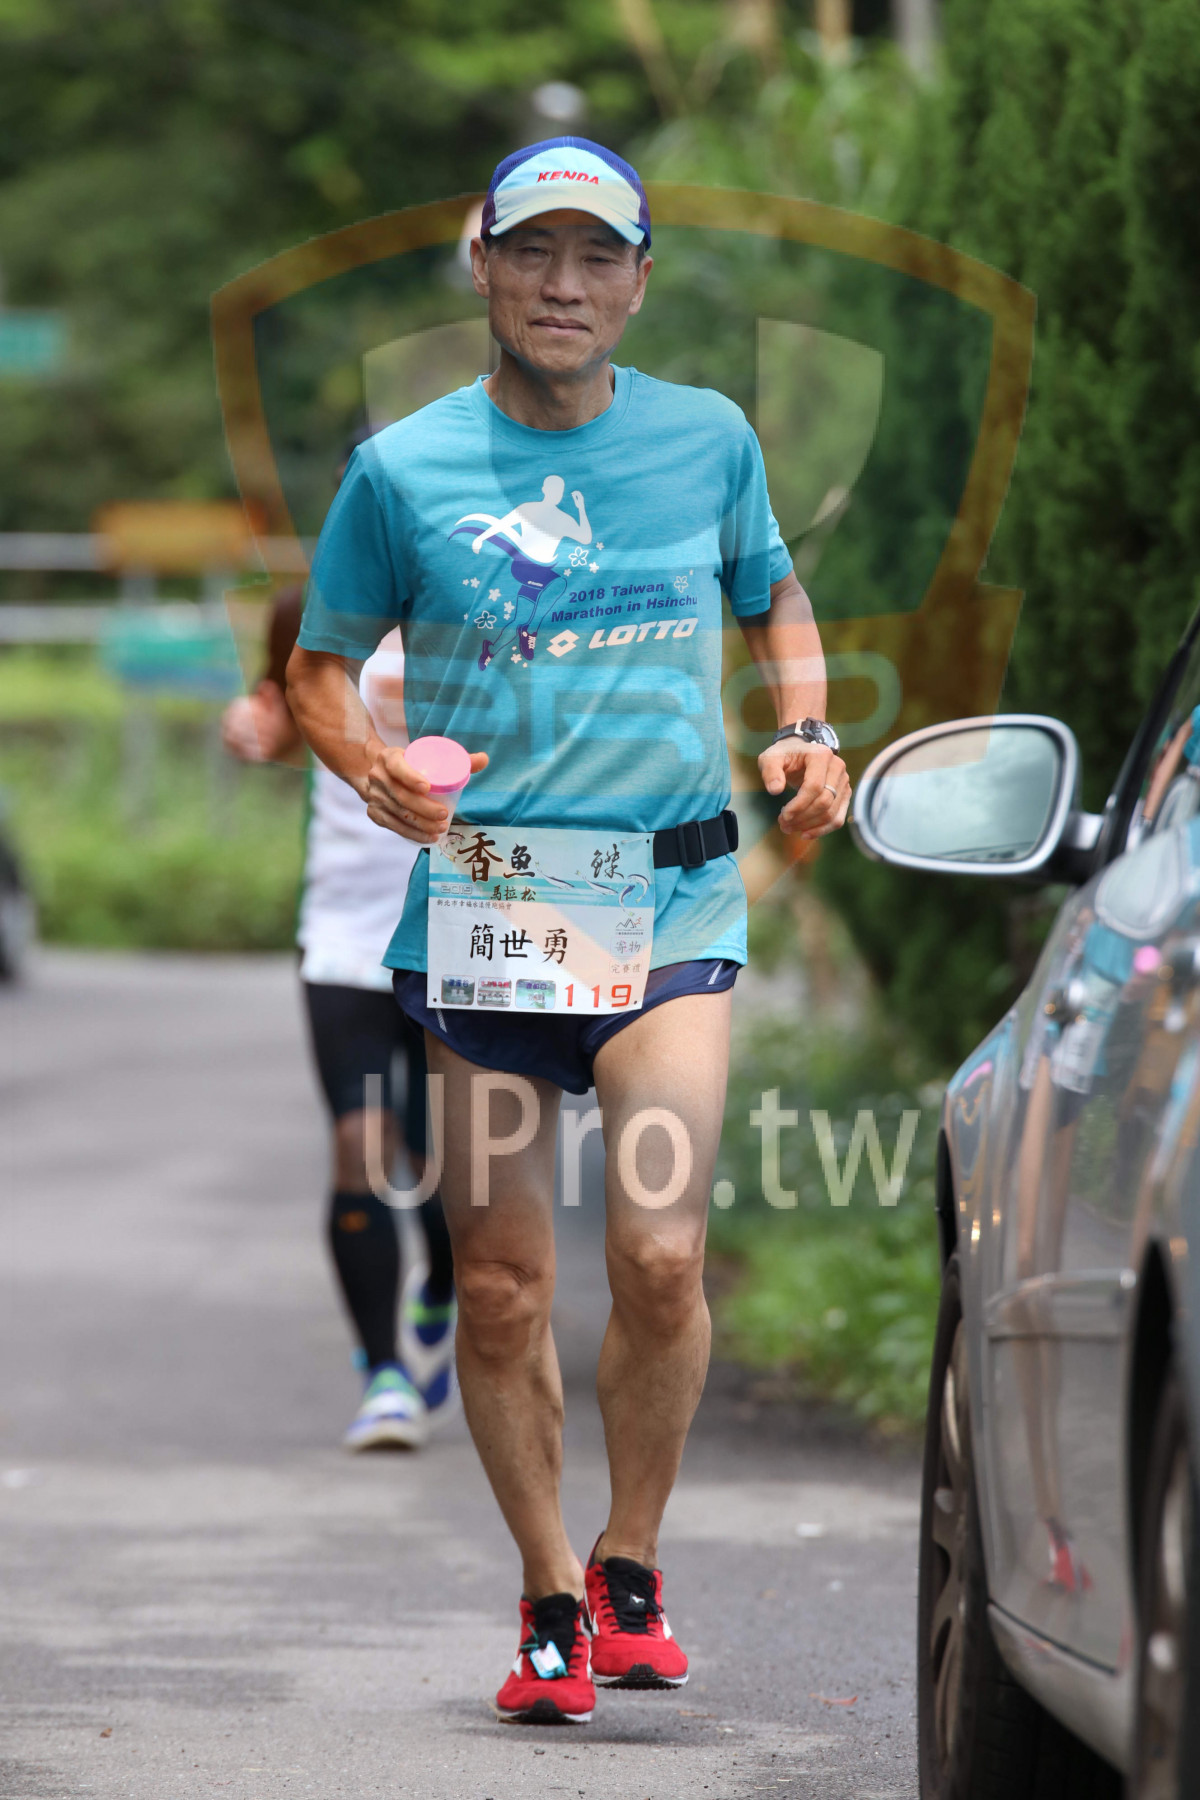 KEND,2018 Talwan,Marathon in Hsinchu,-,,,4ヶ,,1 19|